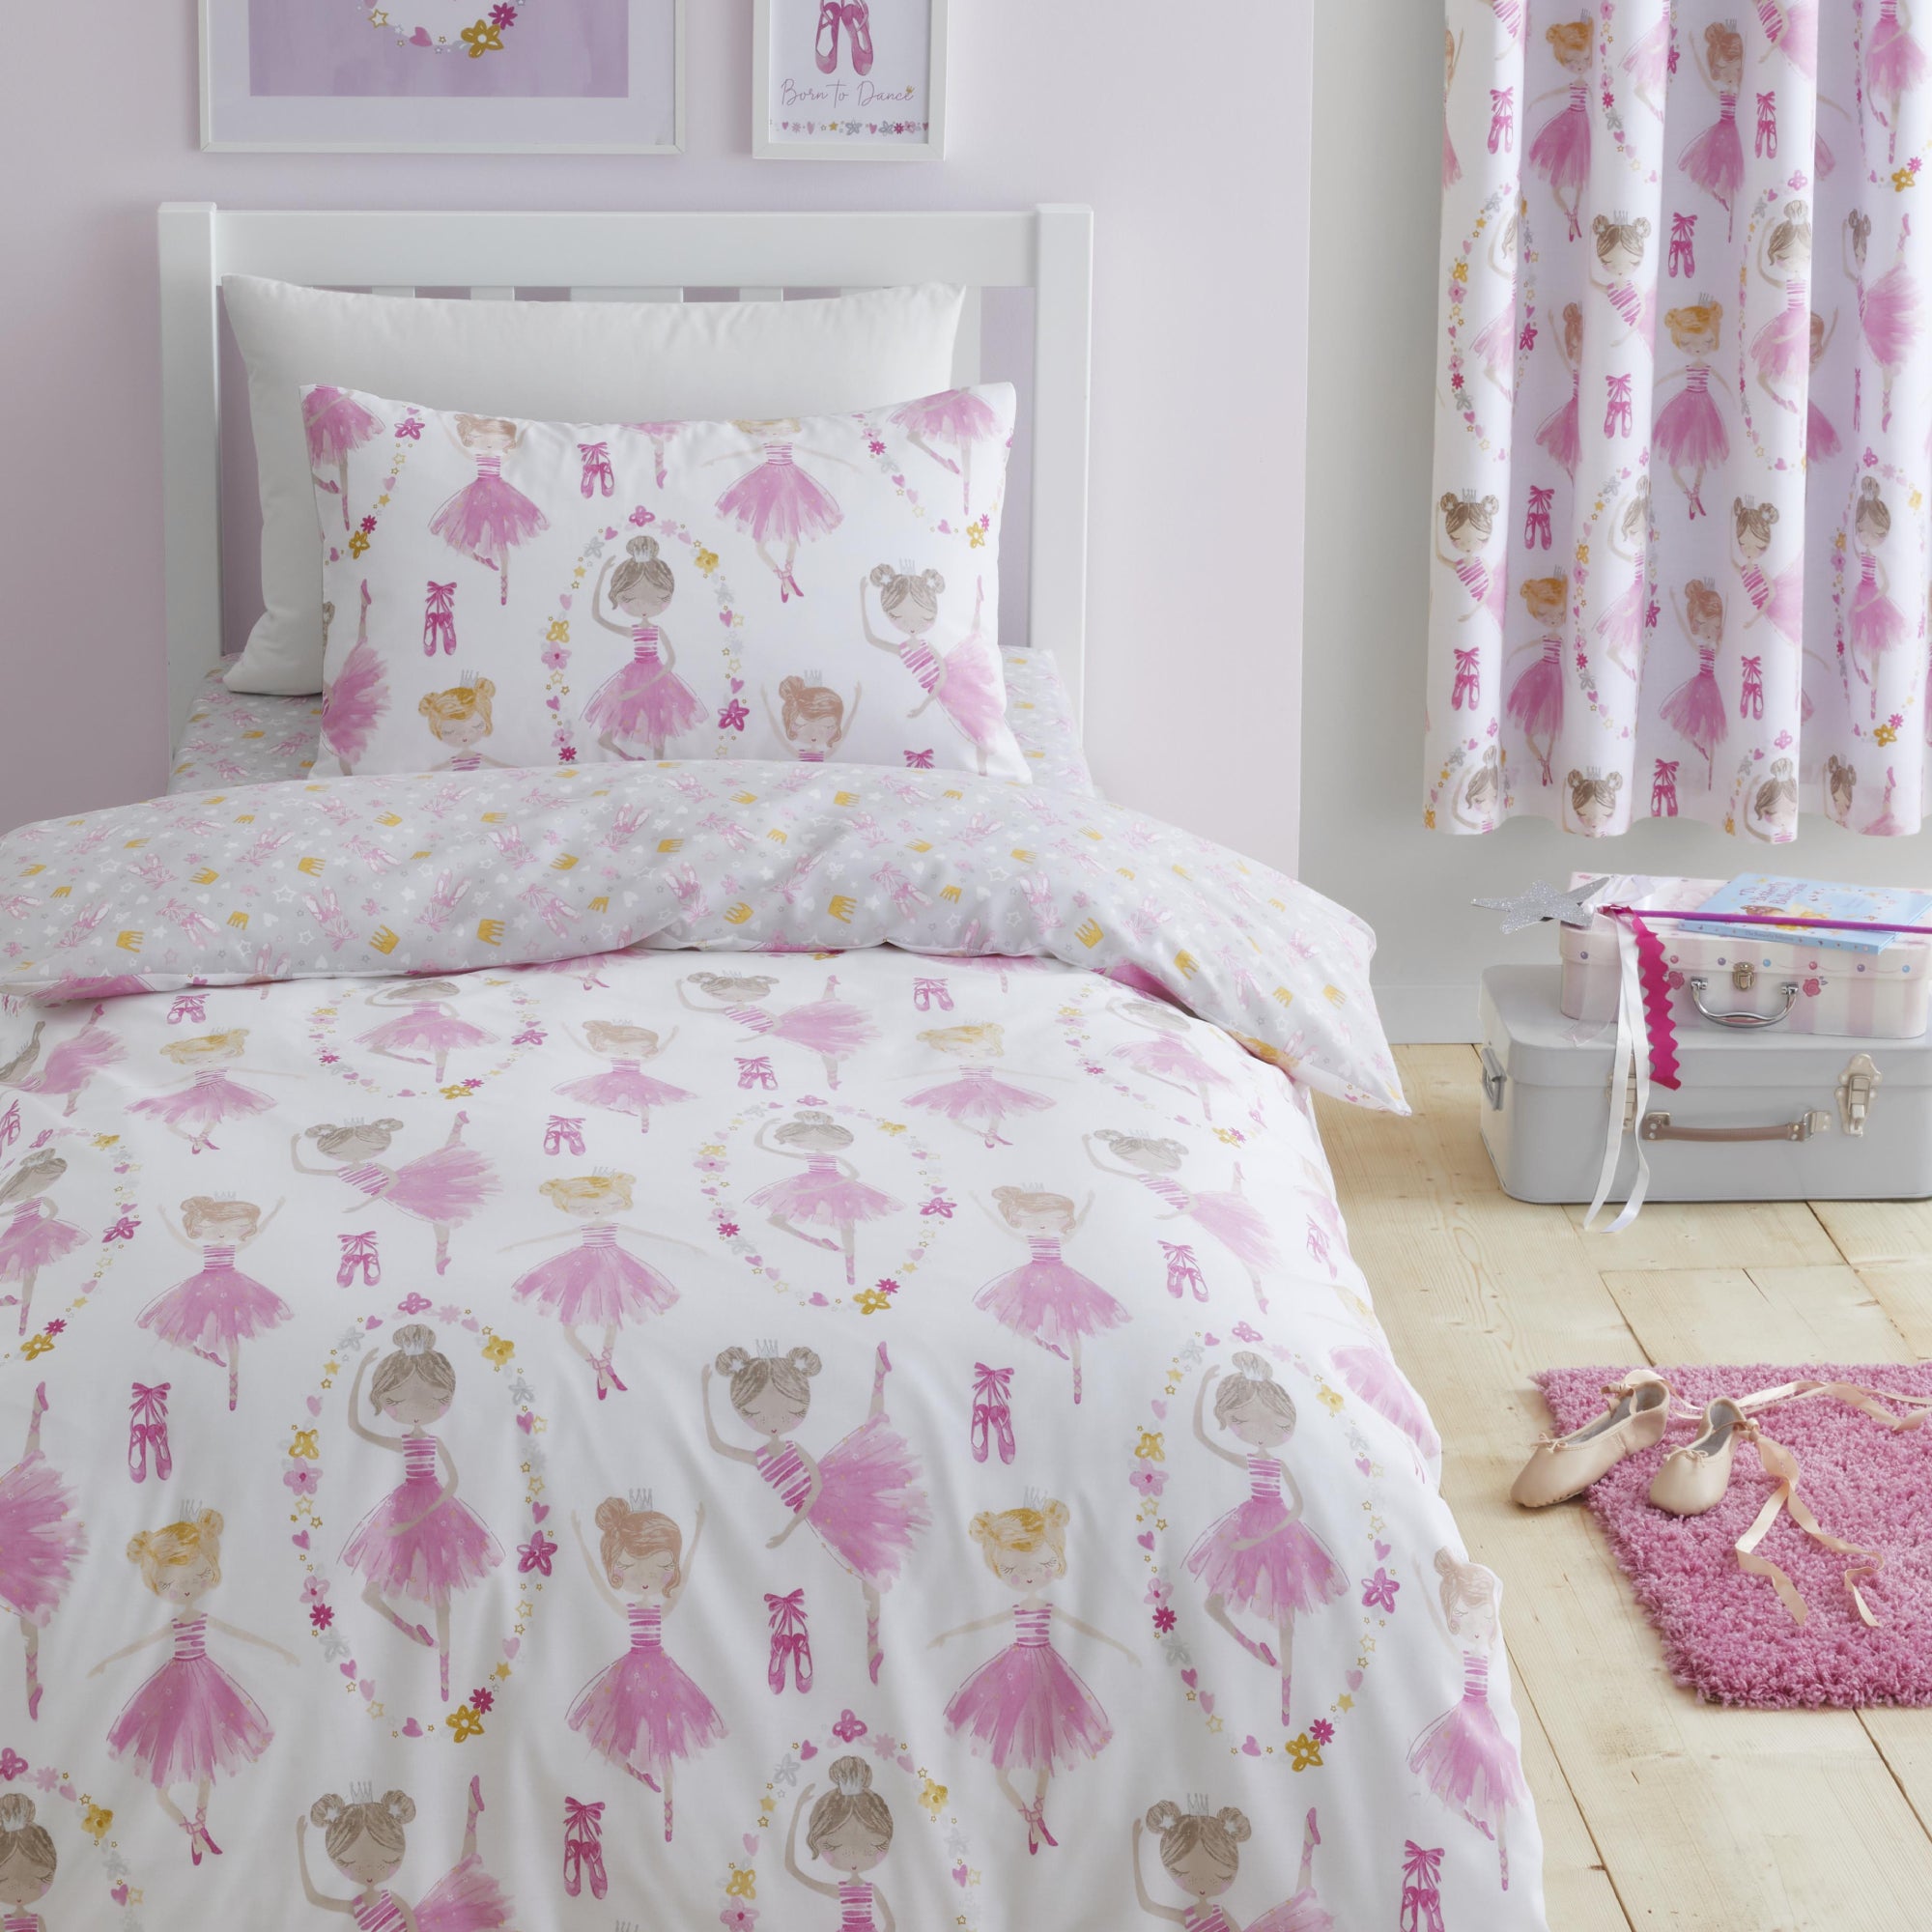 Photos - Bed Linen Ballet Dancer Pink Reversible Duvet Cover & Pillowcase Set Pink 